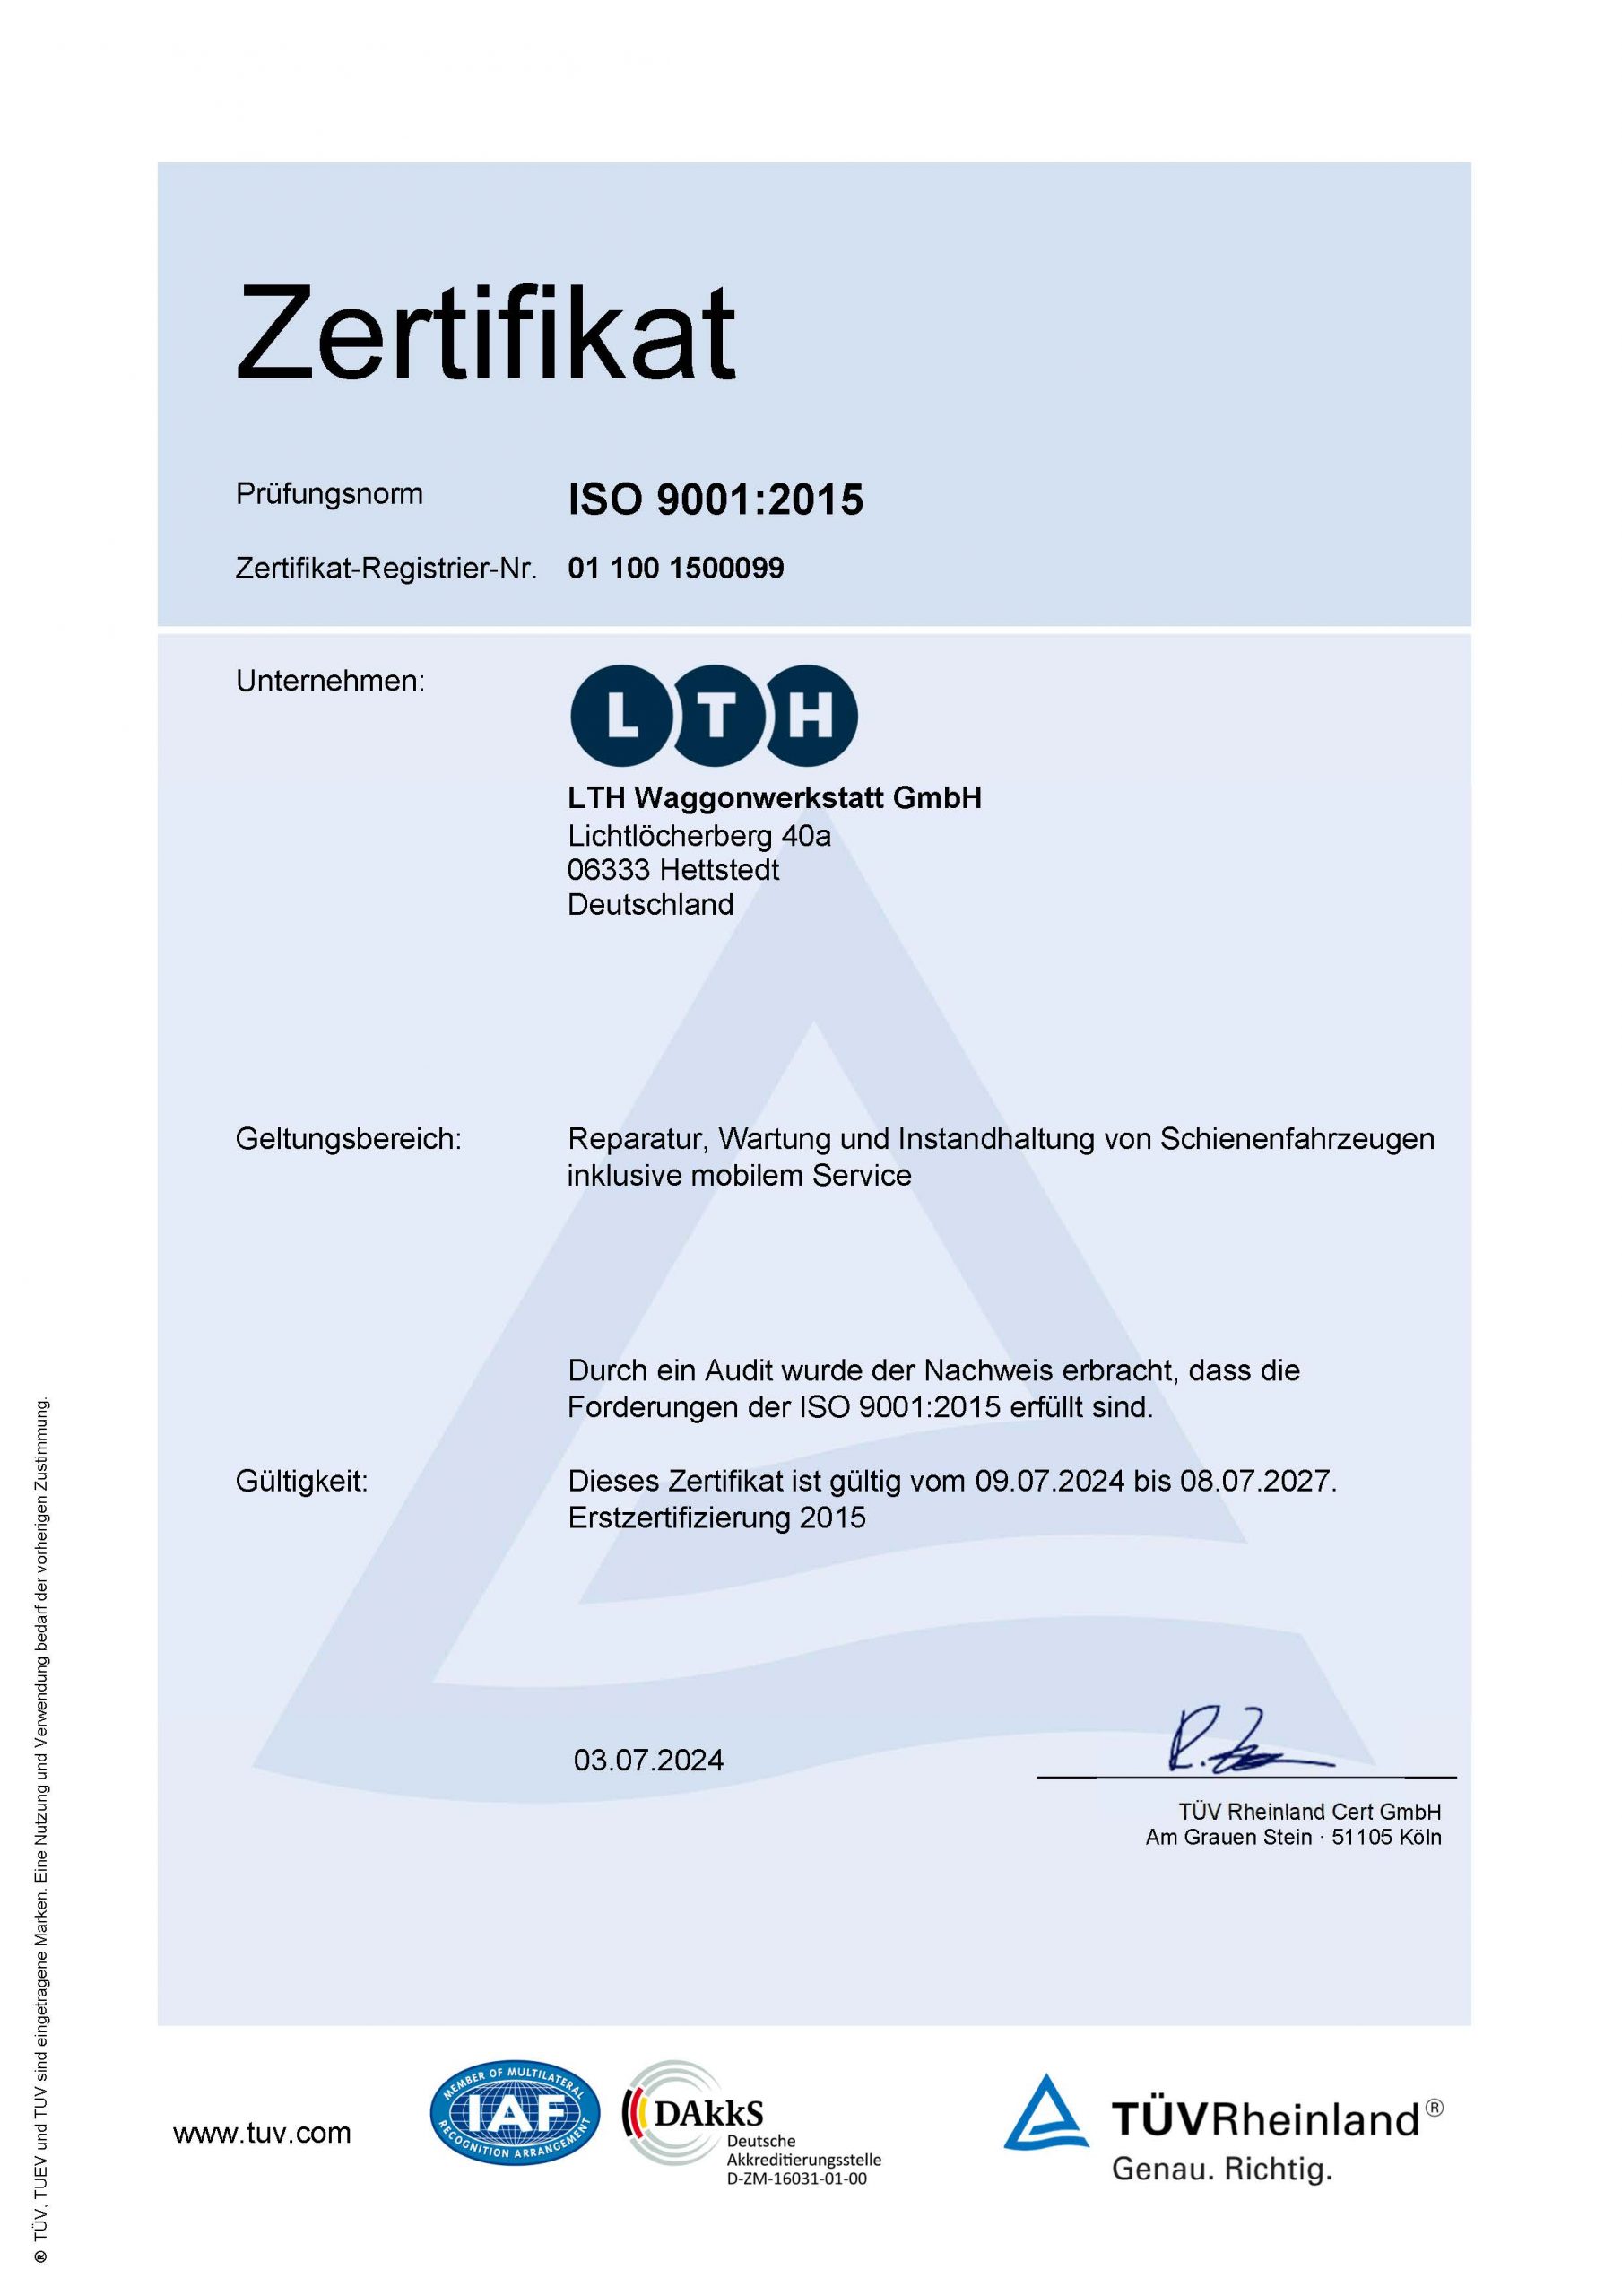 Downloads - Das Bild zeigt ein Zertifikat des TÜV Rheinlands über die Prüfungsnorm ISO 9001:2015, welche von der LTH Waggonwerkstatt GmbH erfüllt worden sind.